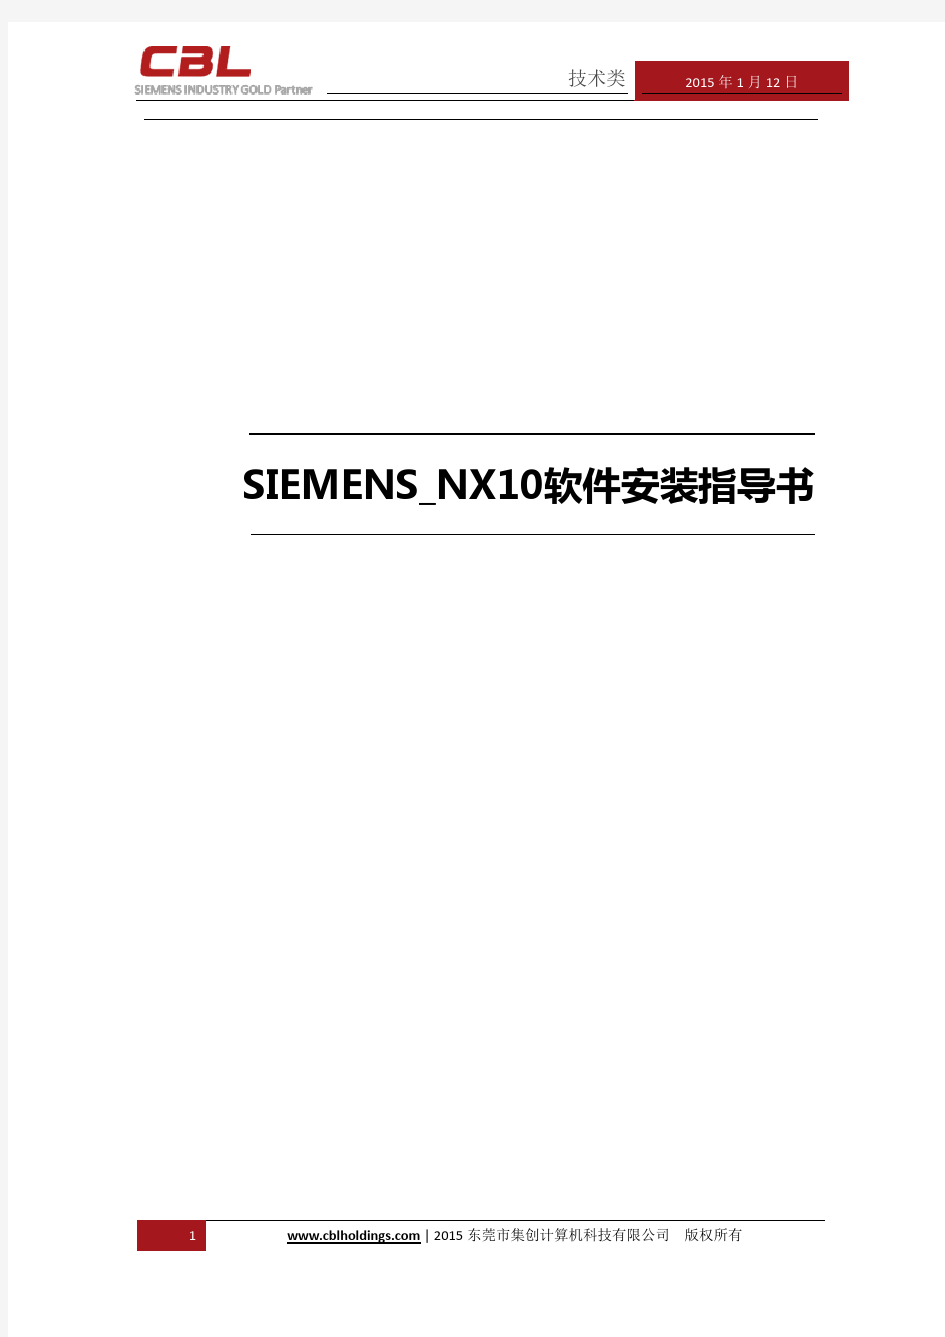 Siemens_NX软件安装指导书_正式版